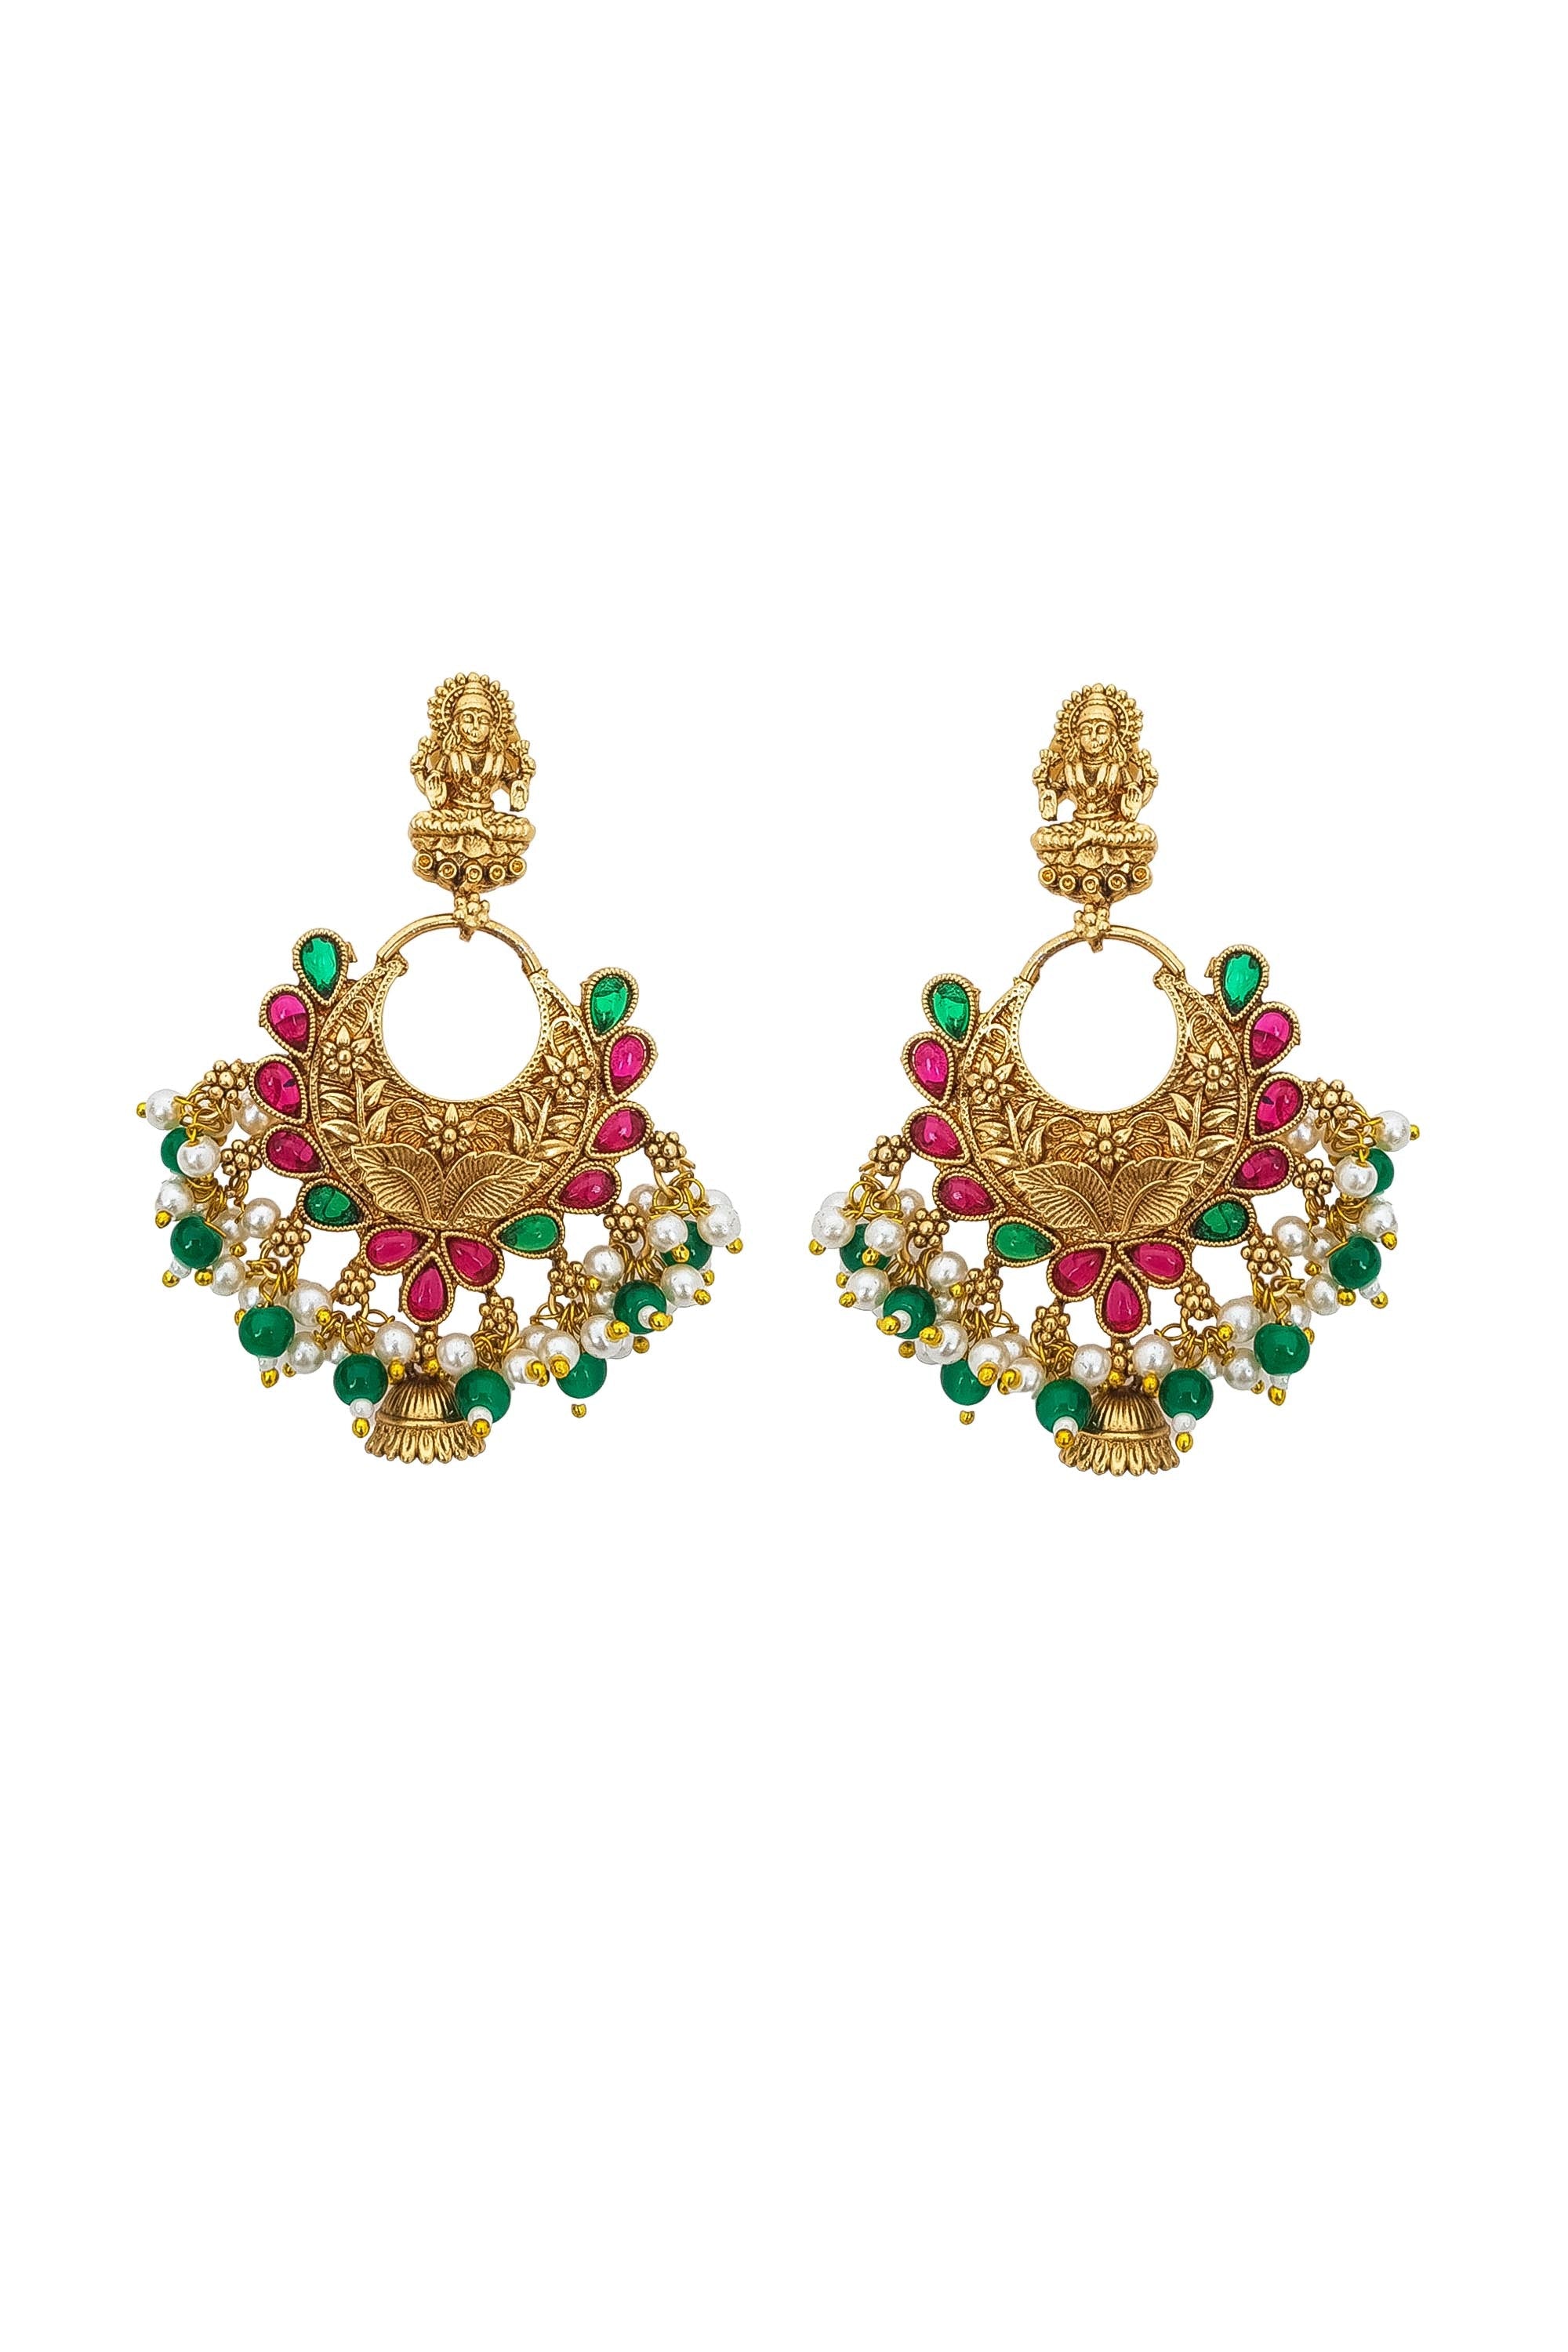 Designer Temple earrings Jhumka 17374N